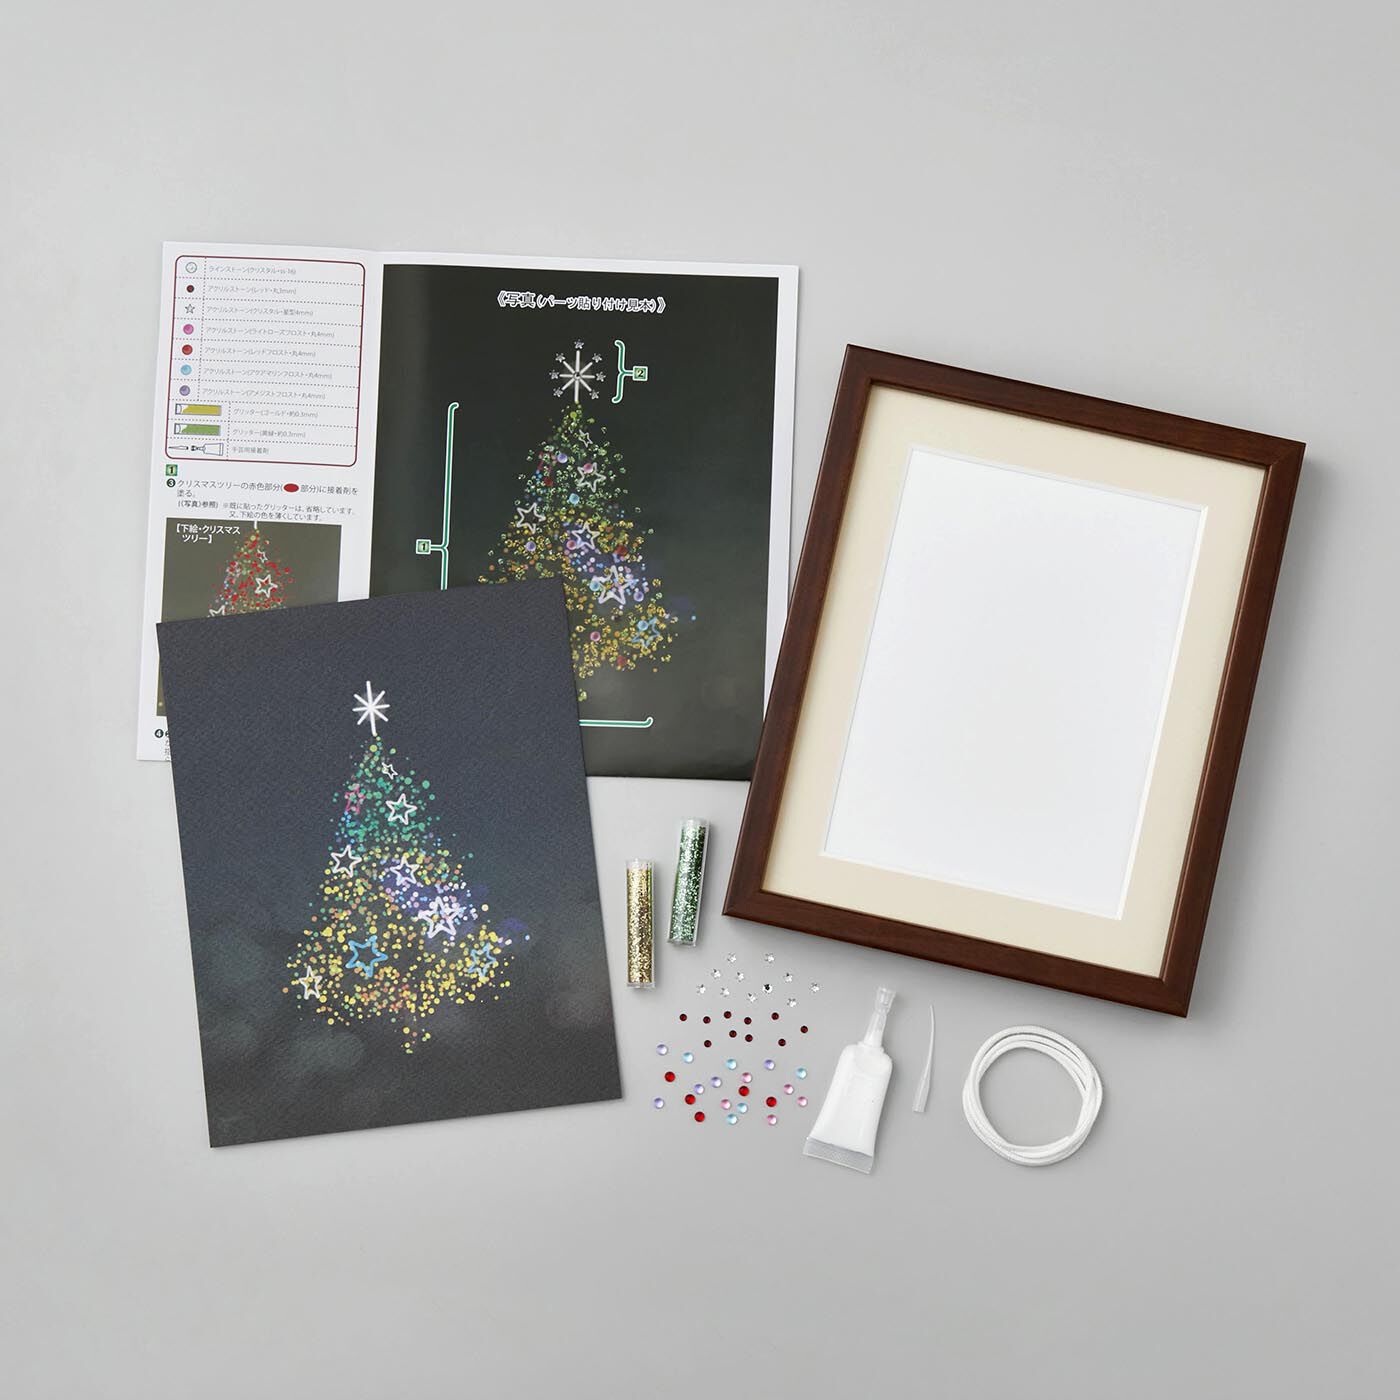 Couturier special|クリスマスツリーの輝きをプラスして　貼り付けるだけのビーズデコール|お届けキットの一式です。